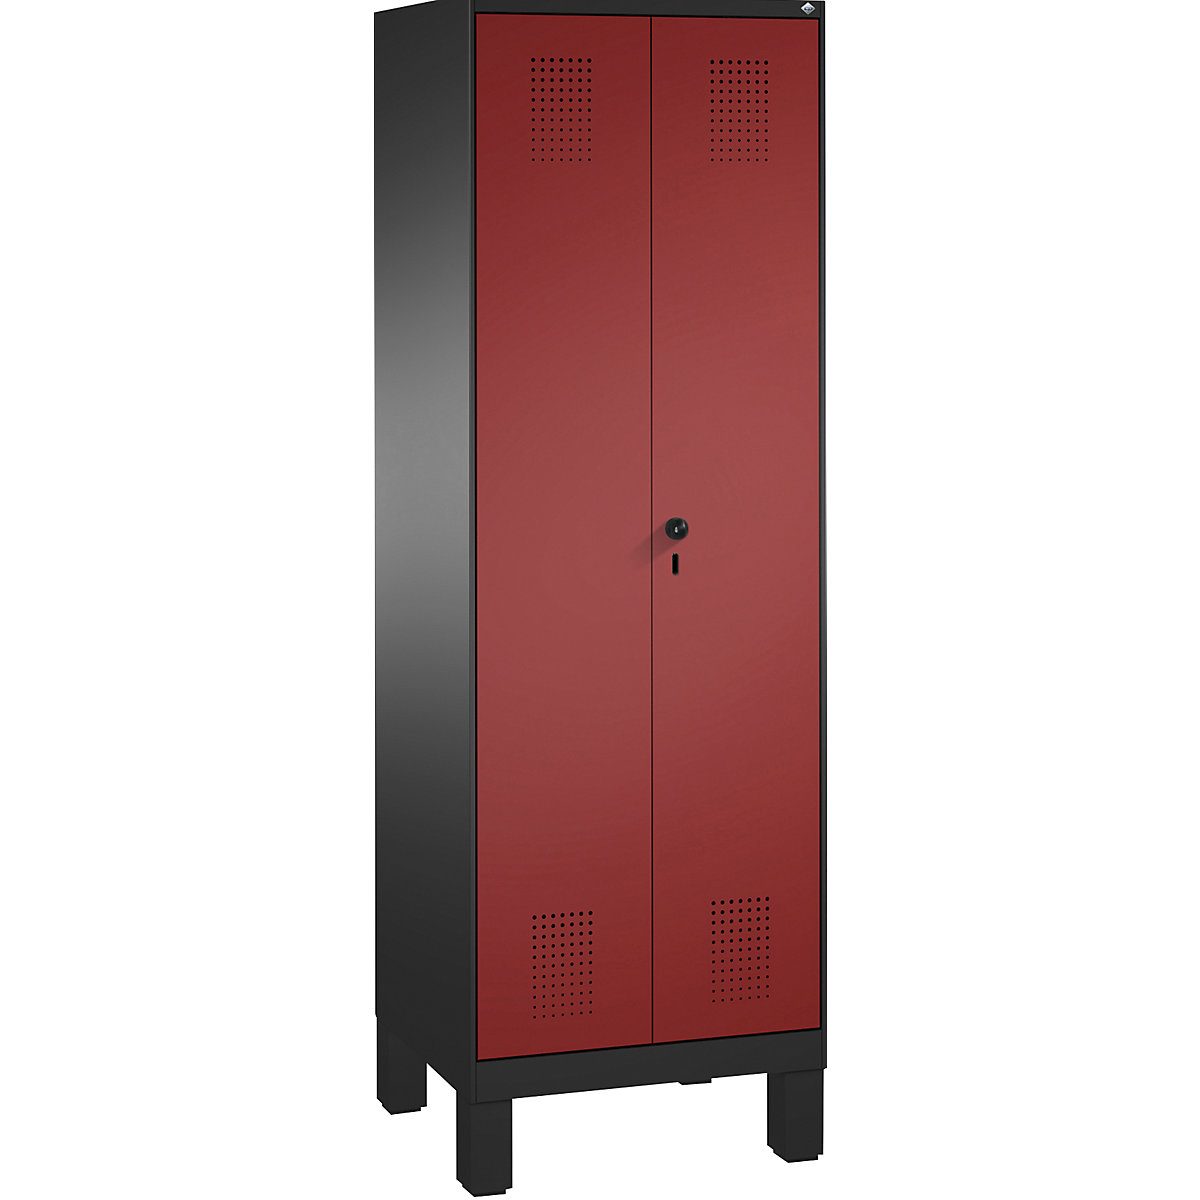 EVOLO takarítószer-/készüléktároló szekrény – C+P, rövidített válaszfal, 6 akasztó, rekeszek 2 x 300 mm, lábakkal, feketésszürke / rubinvörös-13